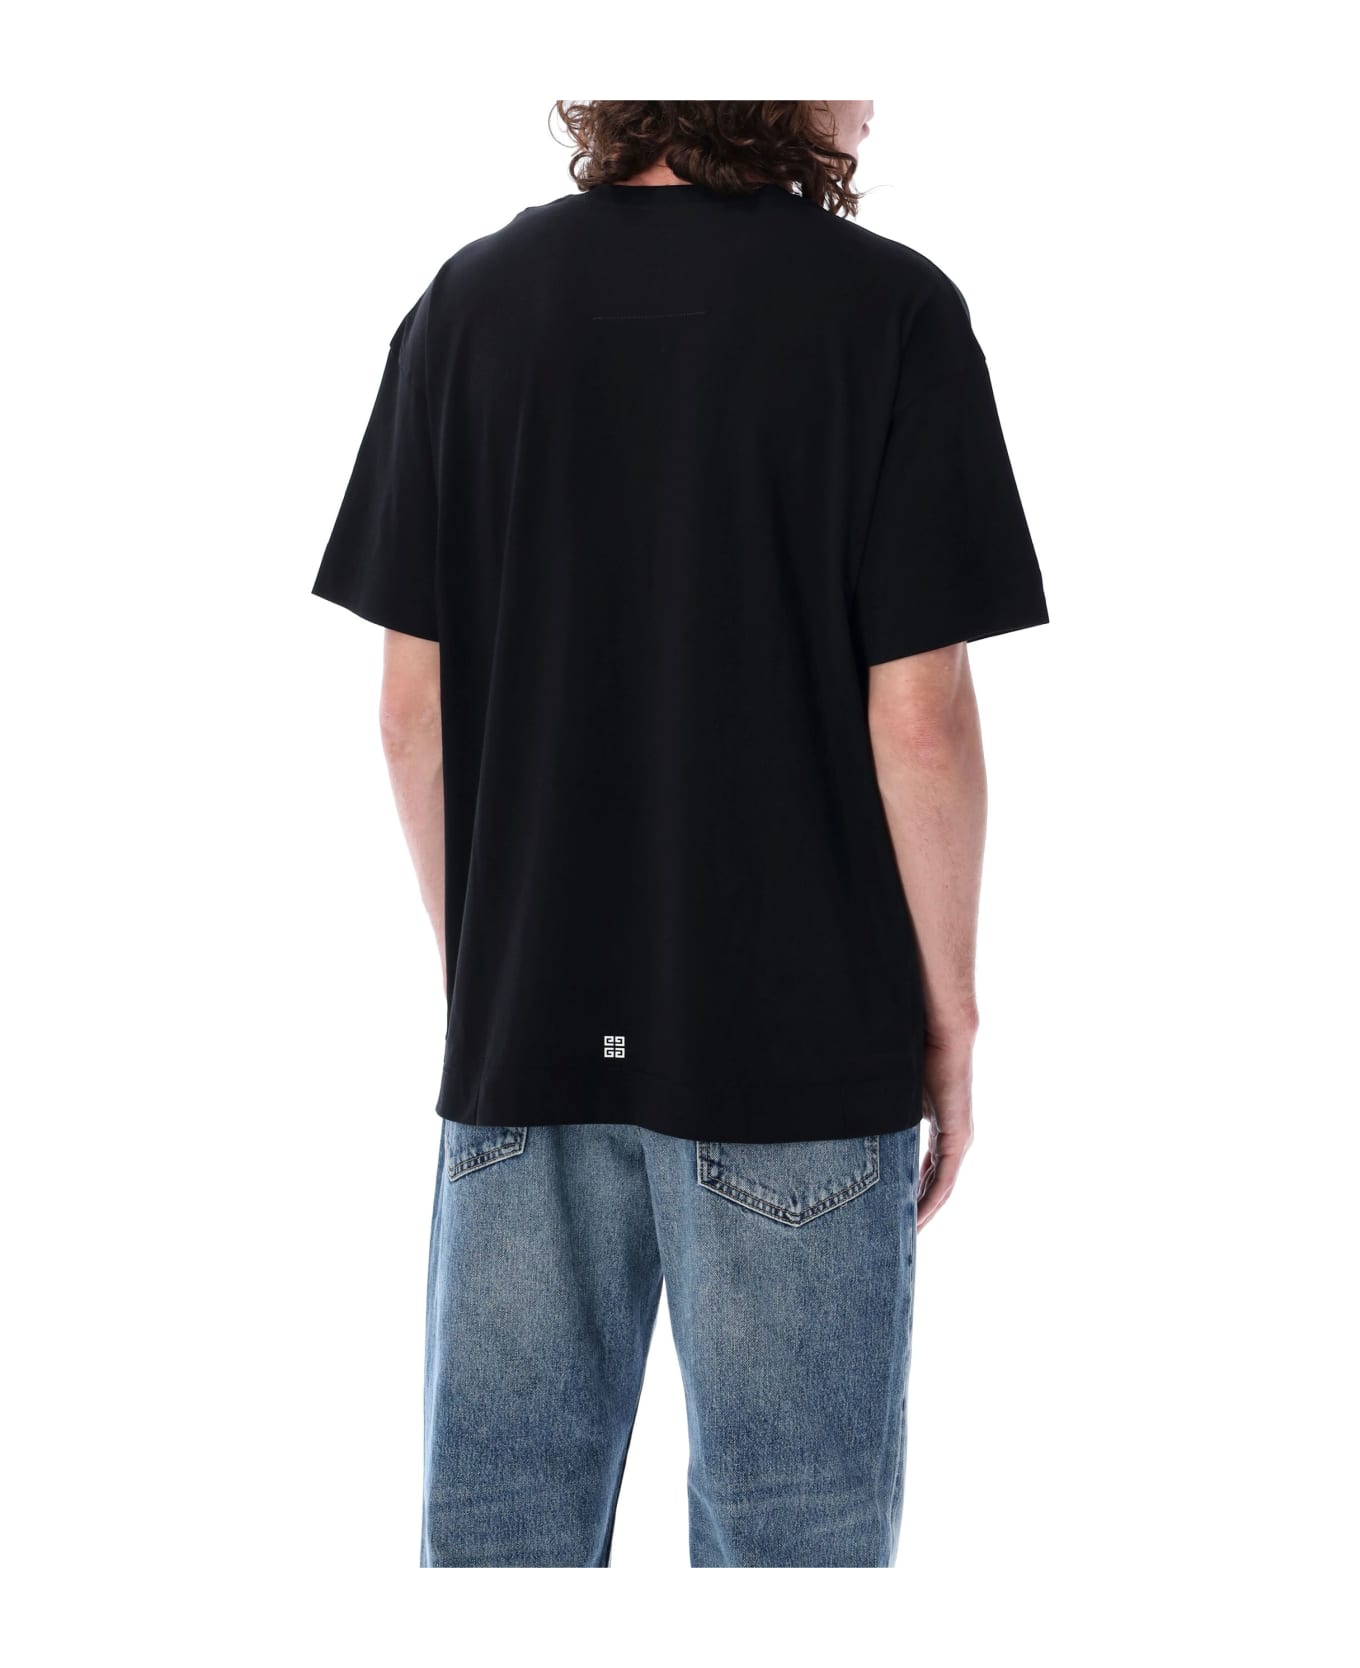 Givenchy Short Sleeves T-shirt - BLACK シャツ